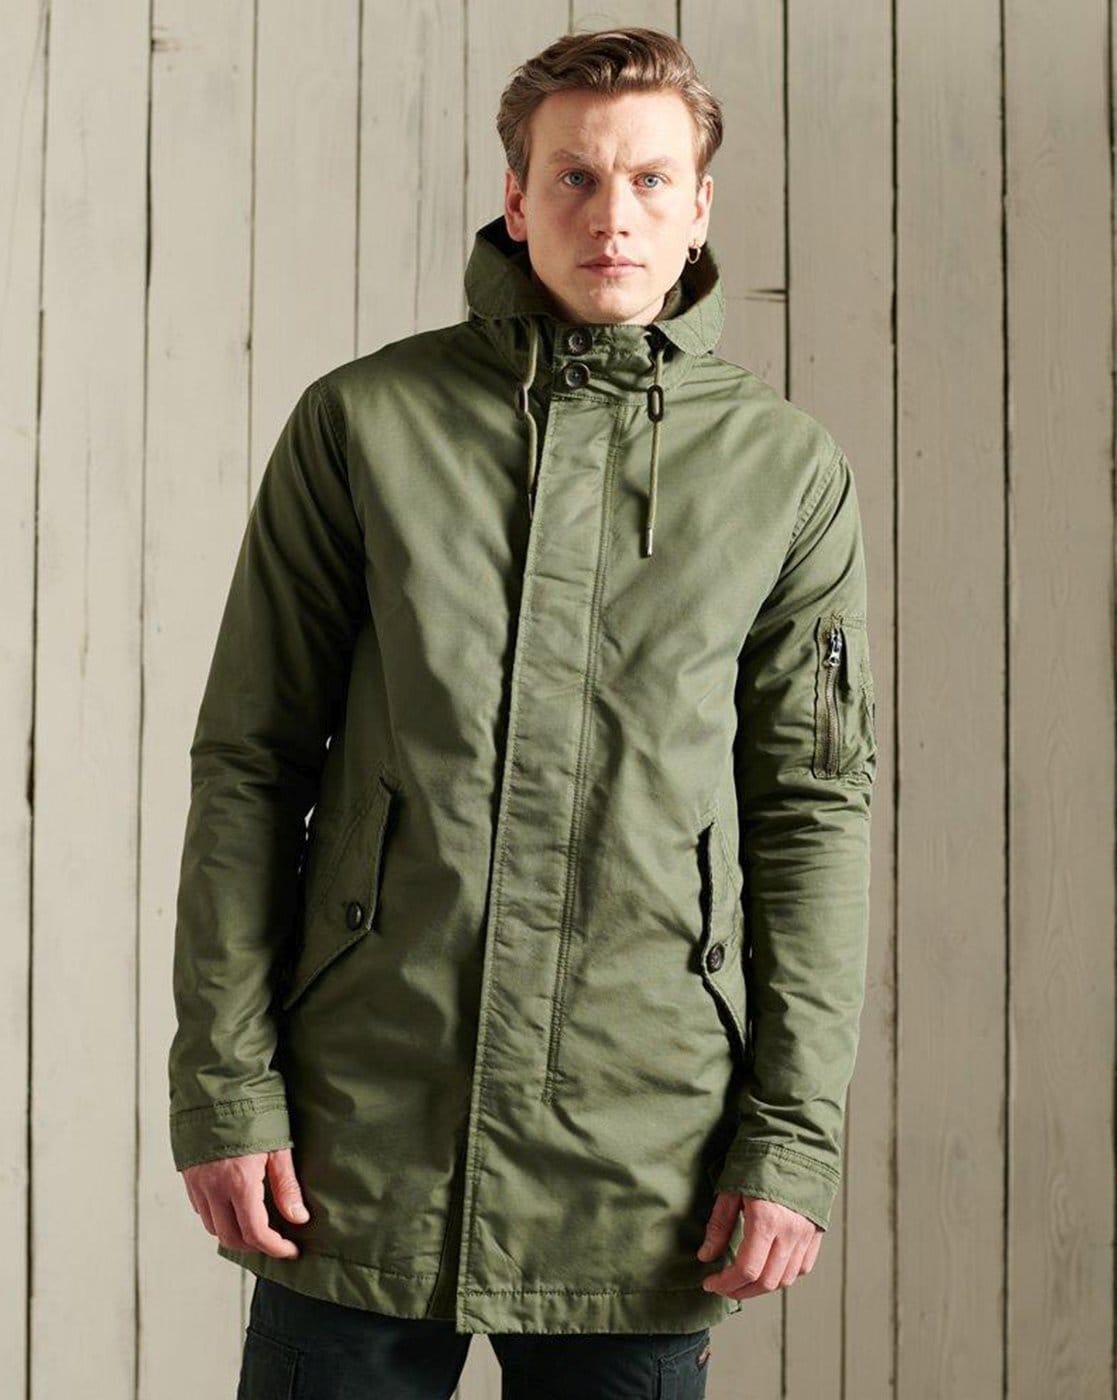 Buy Superdry Olive Green Parka Jacket - Jackets for Men 1162497